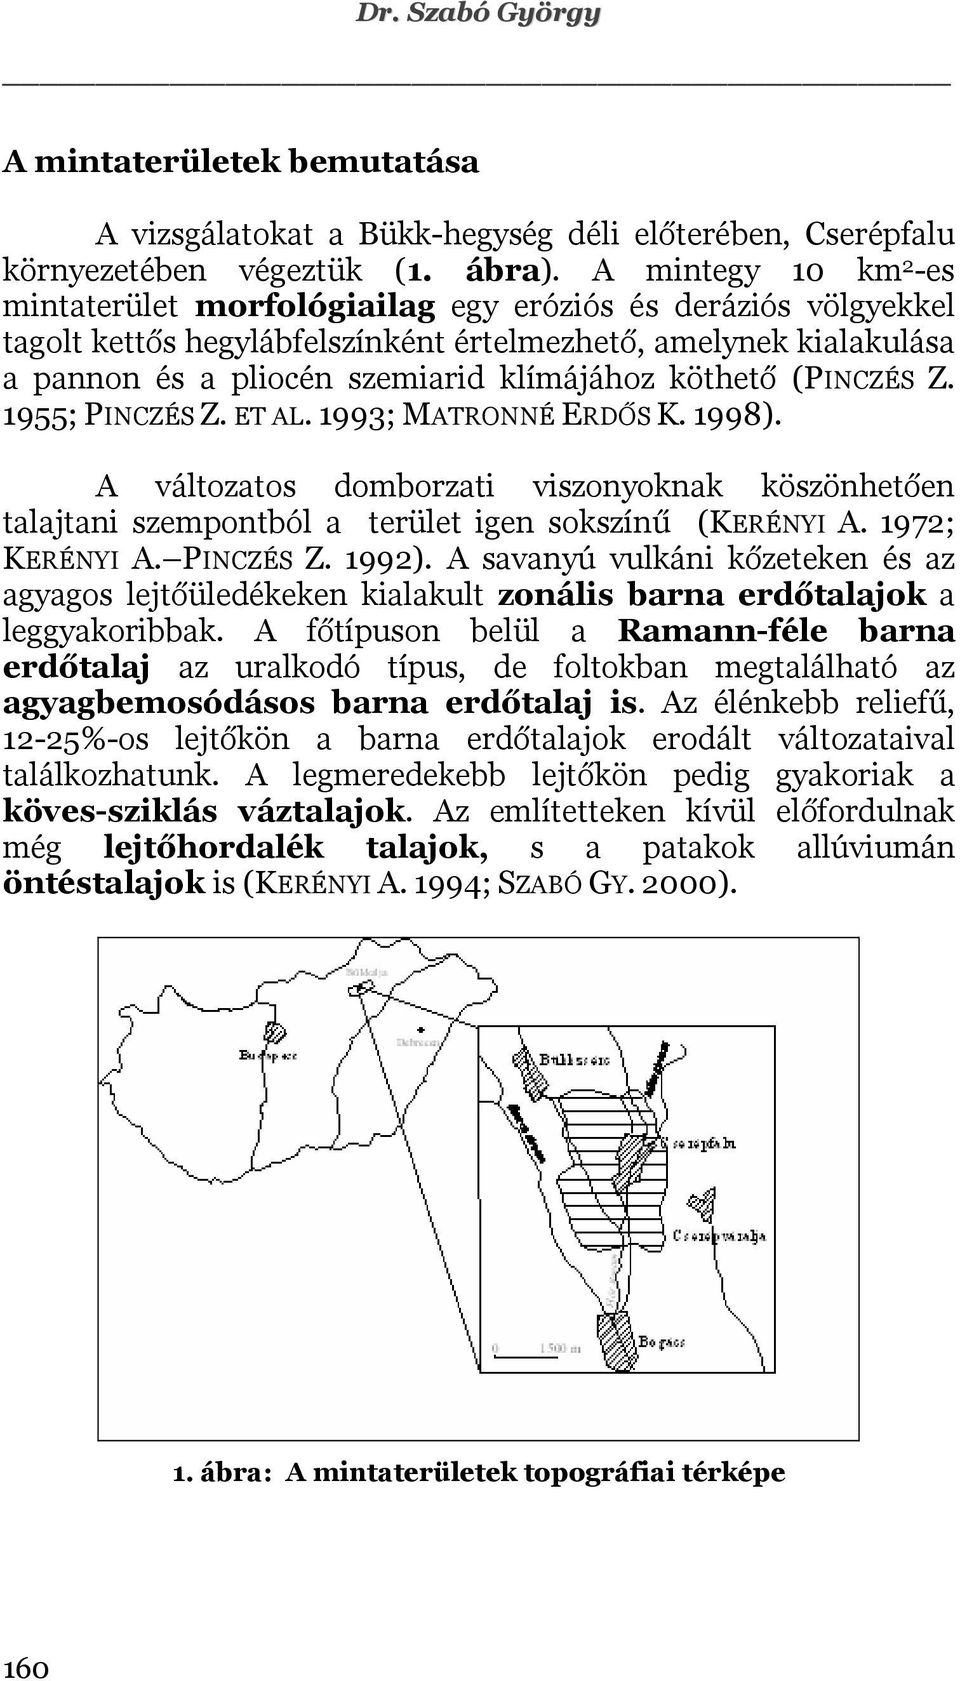 köthető (PINCZÉS Z. 1955; PINCZÉS Z. ET AL. 1993; MATRONNÉ ERDŐS K. 1998). A változatos domborzati viszonyoknak köszönhetően talajtani szempontból a terület igen sokszínű (KERÉNYI A. 1972; KERÉNYI A.